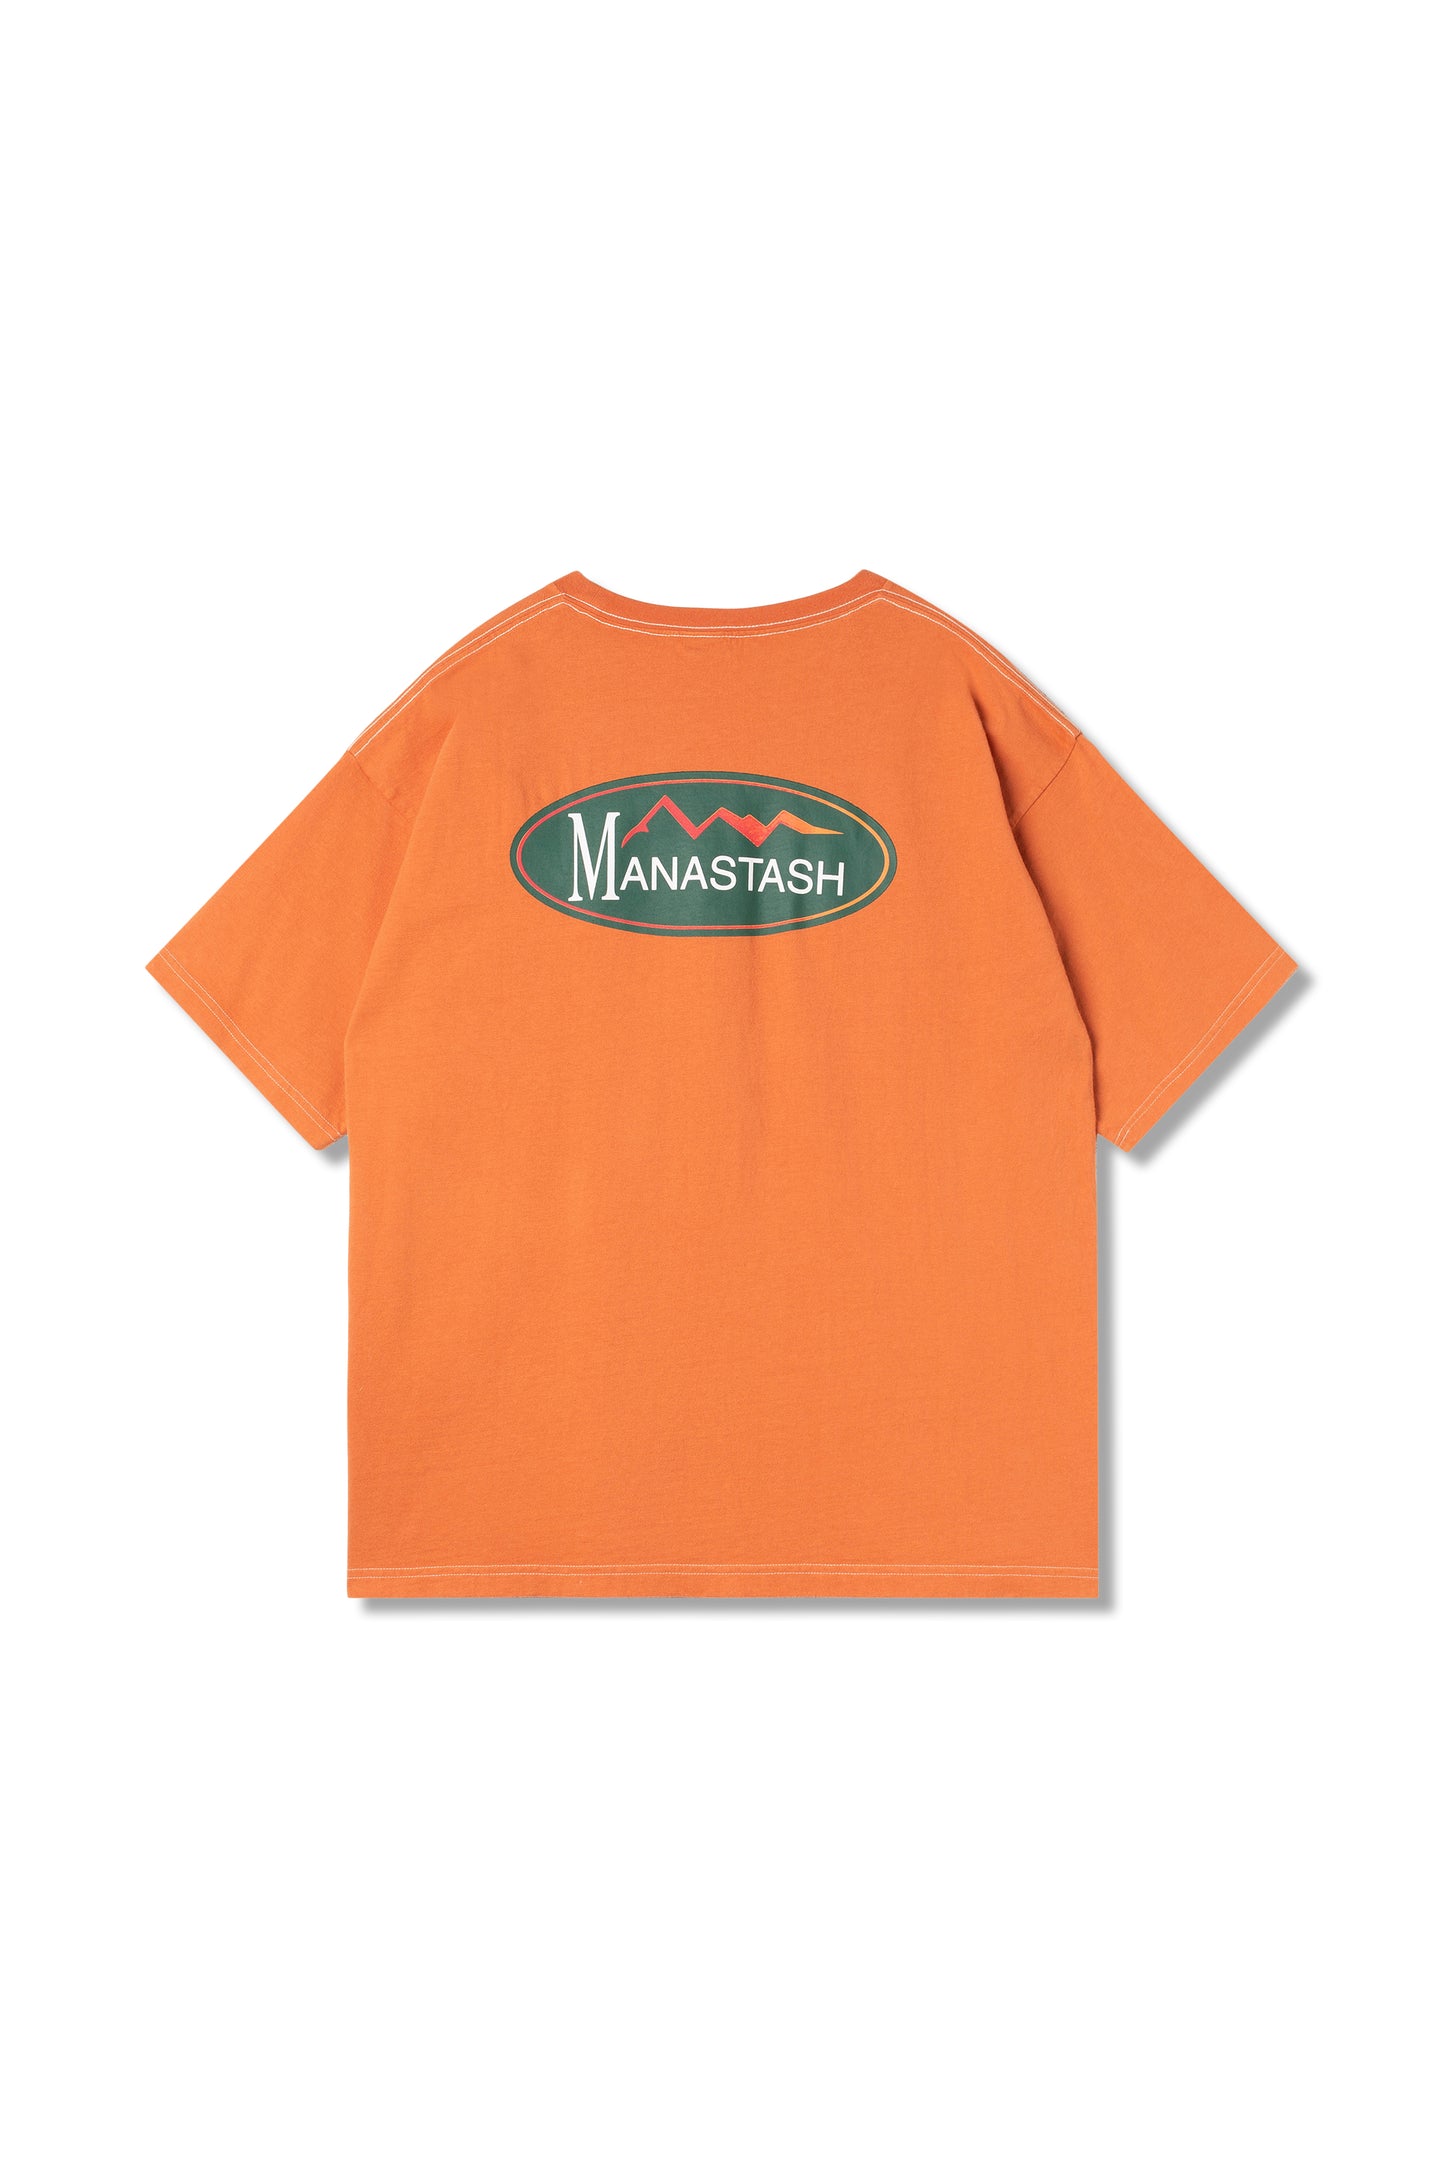 Re:Ctn Oval Logo Tee (Orange)